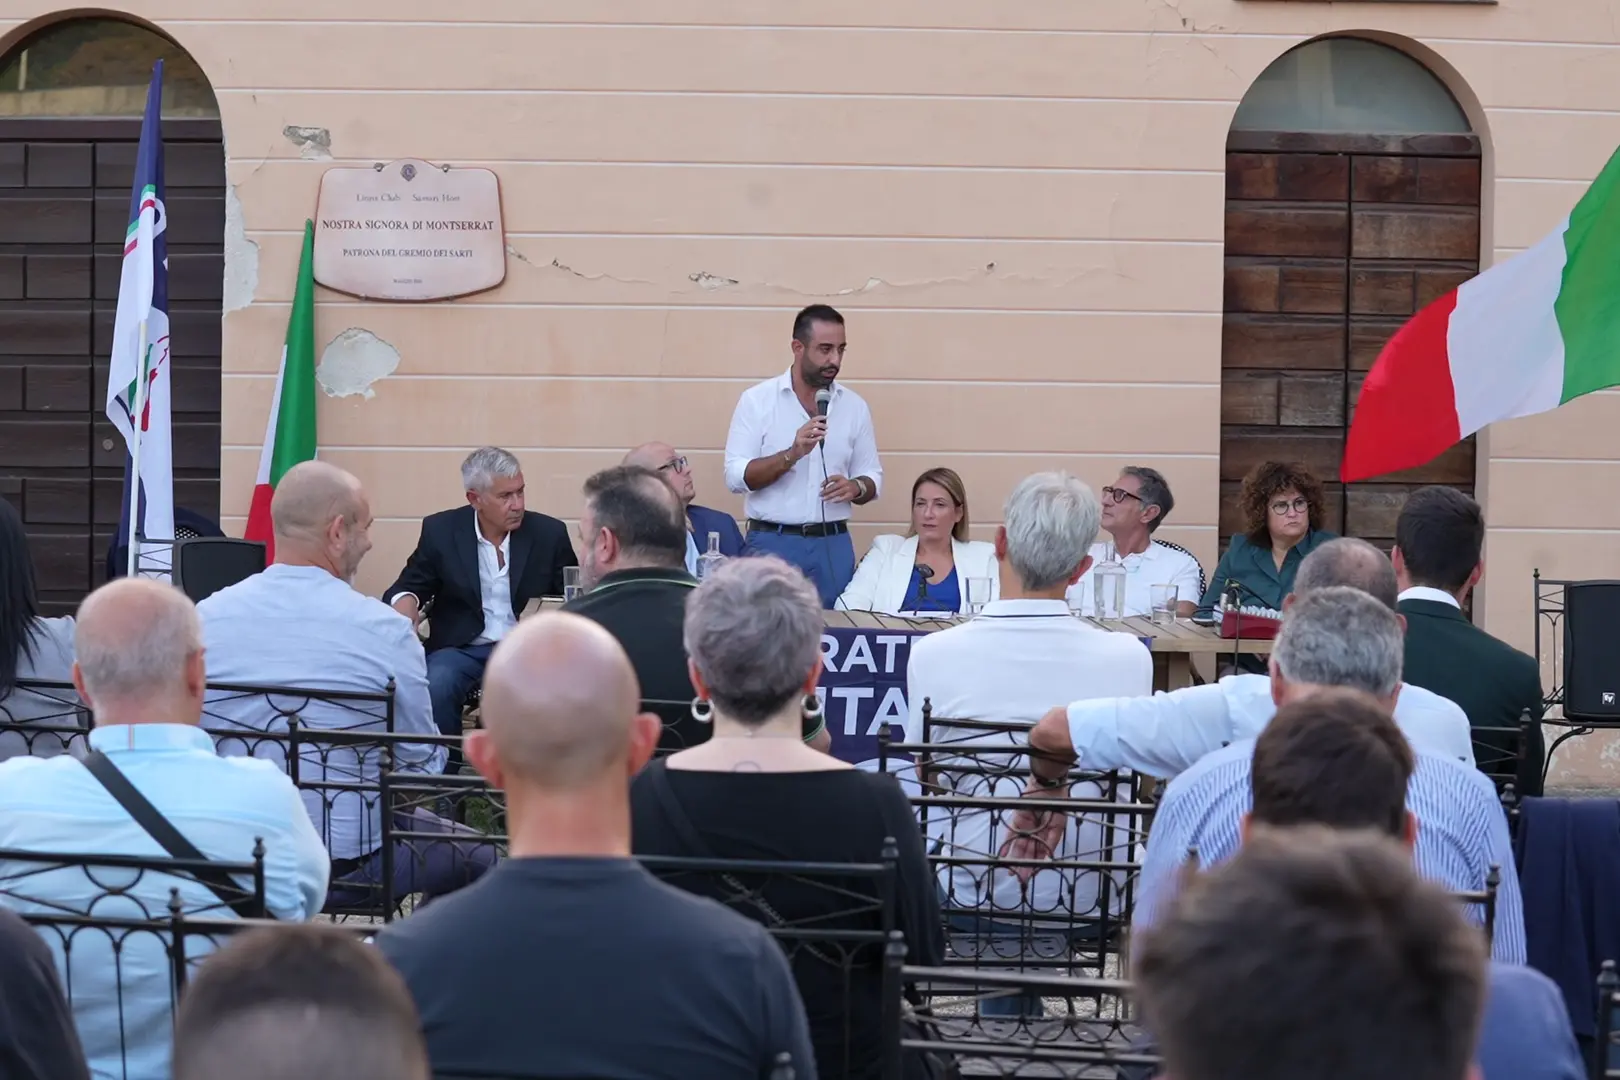 L'evento di Fratelli d'Italia al parco di Monserrato (L'Unione Sarda)